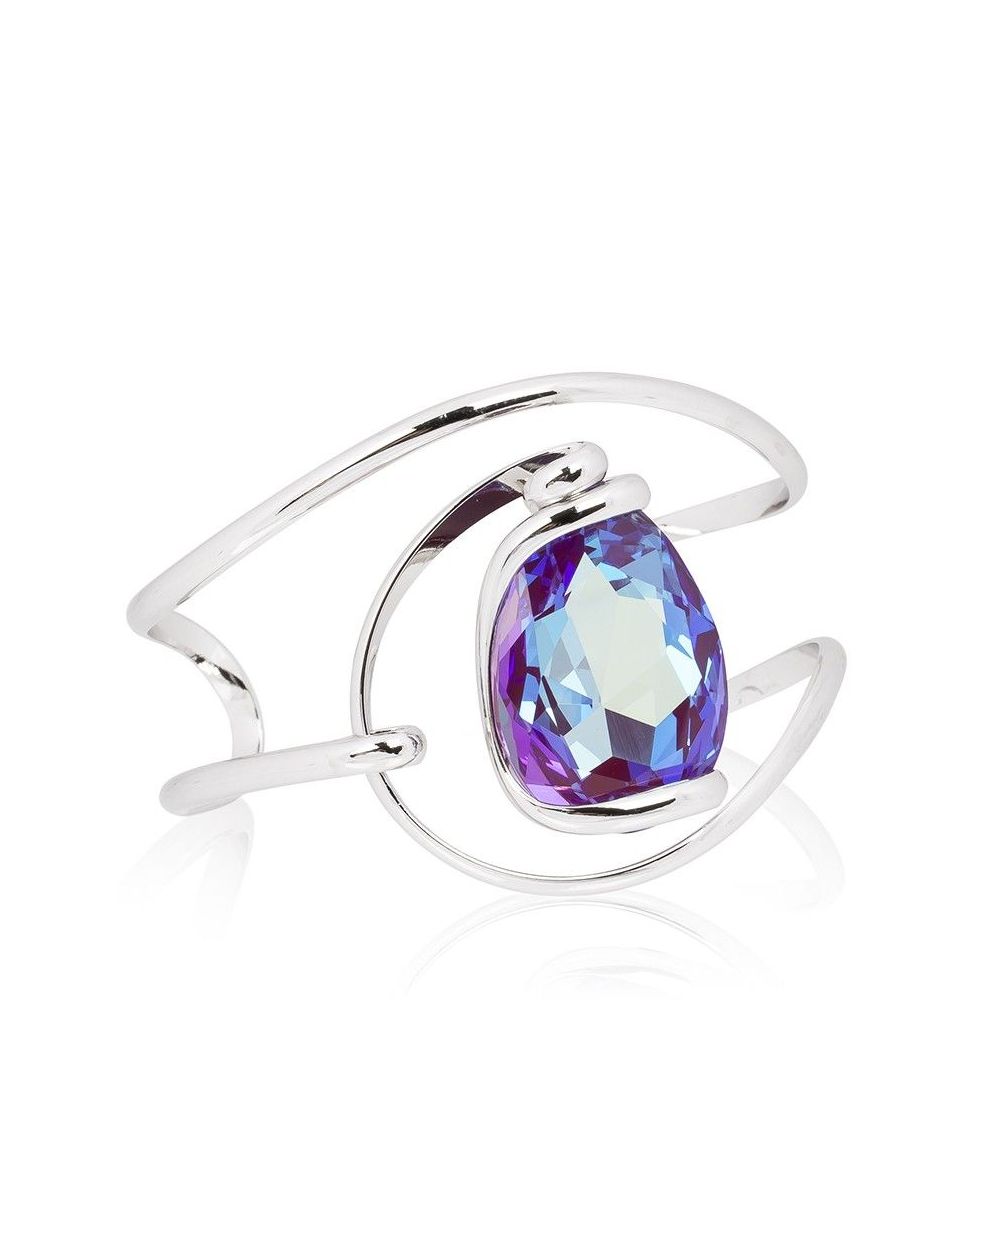 Andrea Marazzini bijoux - Bracelet cristal Swarovski New Drop Ametist Delite BR1